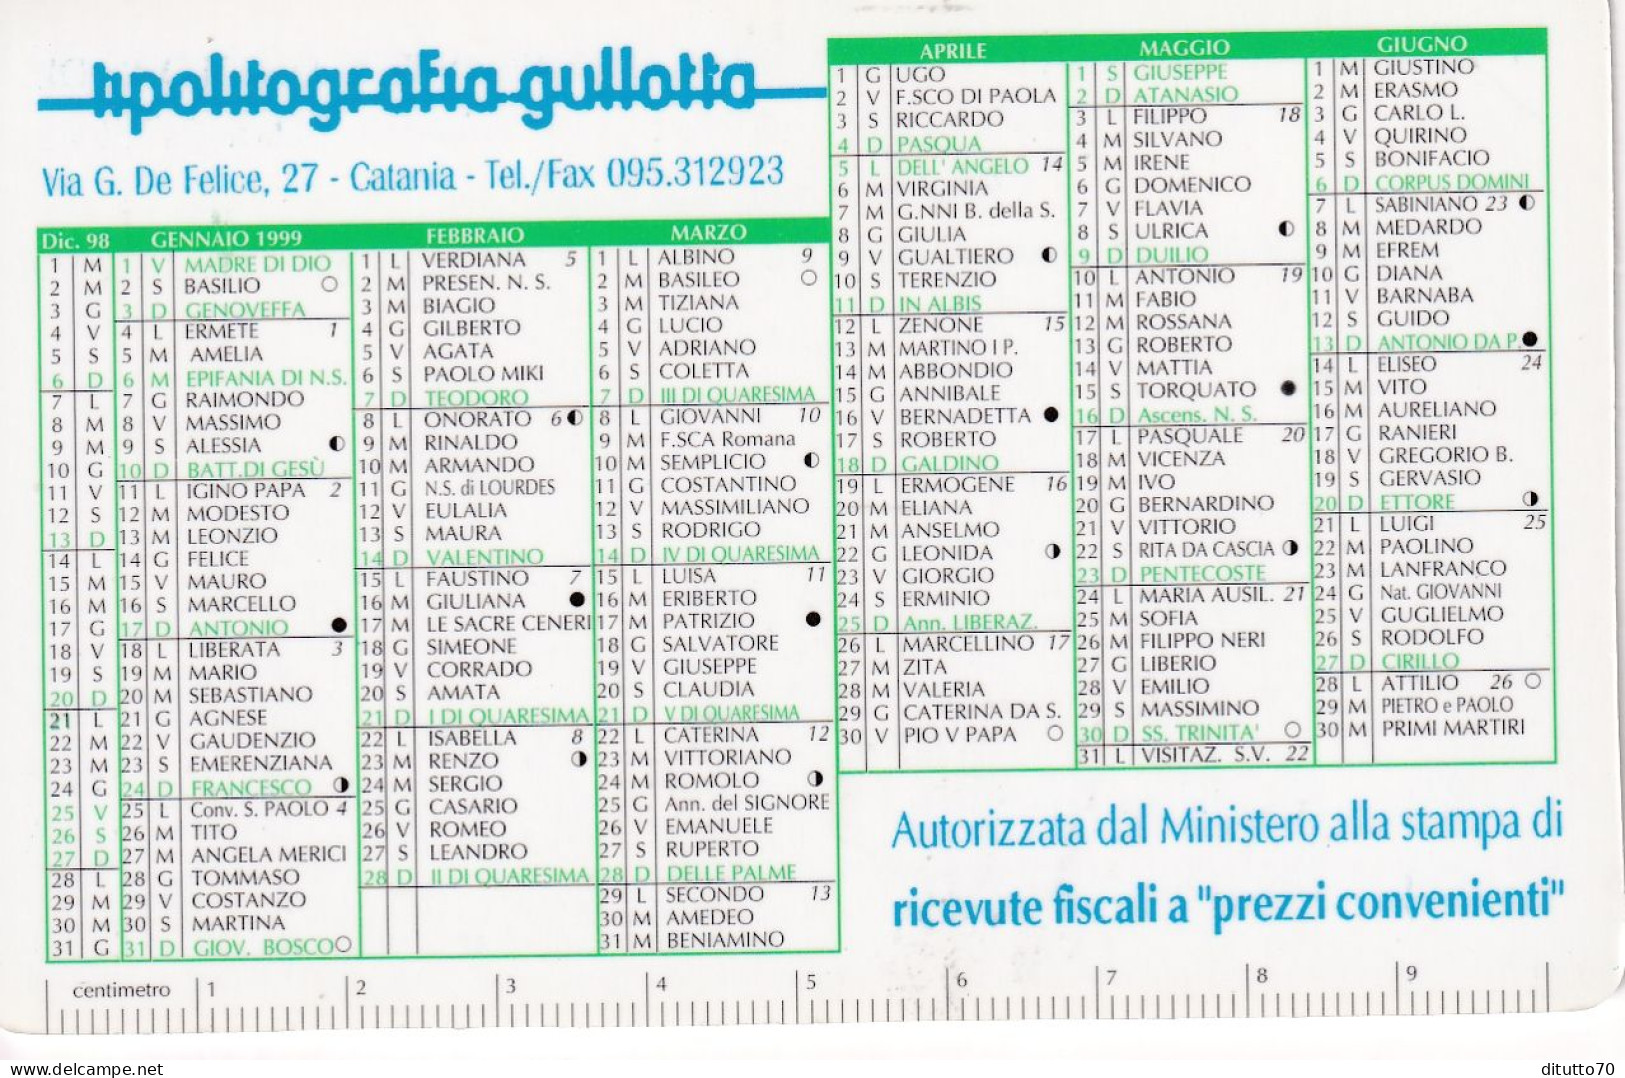 Calendarietto - Lipolitografia Gullotta - Catania - Anno 1999 - Kleinformat : 1991-00